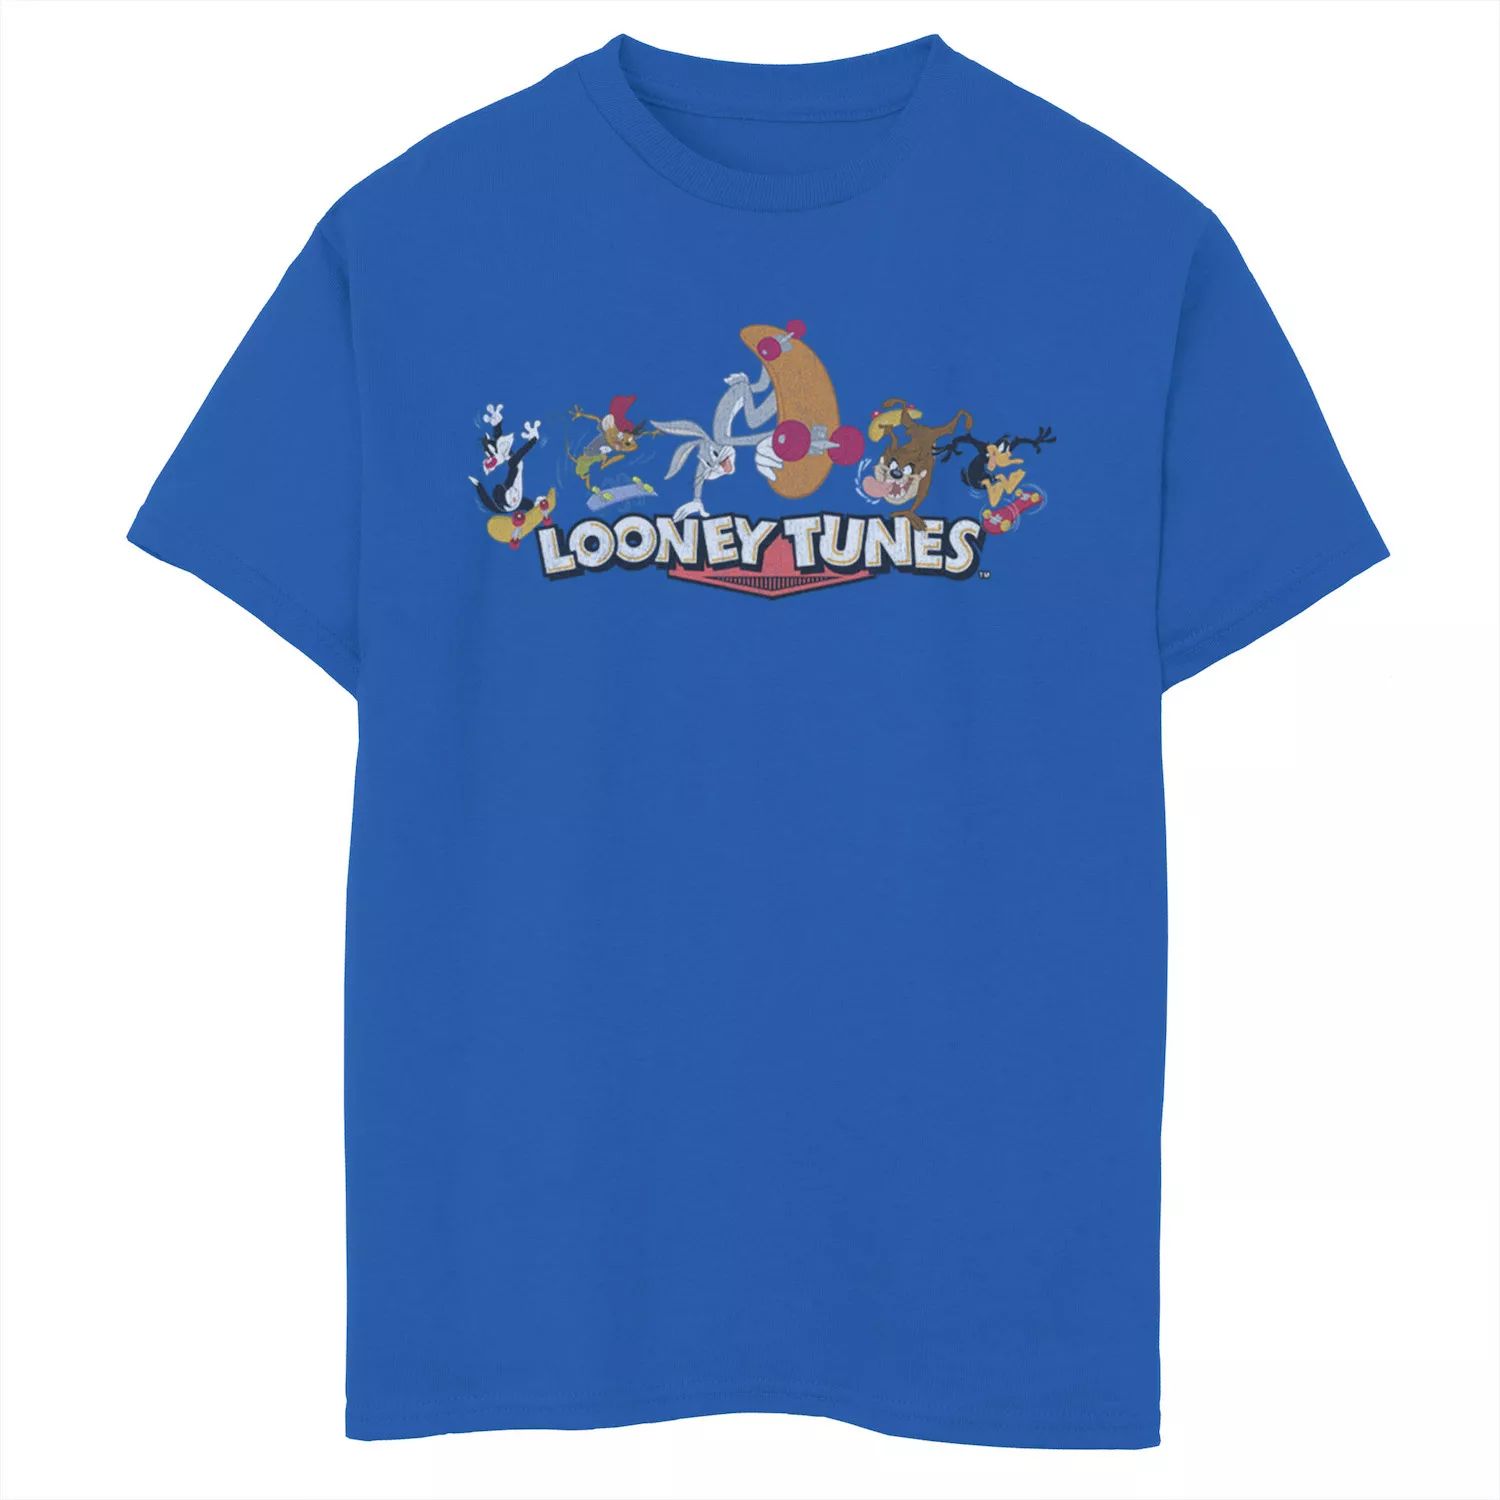 Футболка с рисунком Looney Tunes Skate Tunes для мальчиков 8–20 лет, групповая съемка Licensed Character футболка с рисунком looney tunes vacations для мальчиков 8–20 лет licensed character